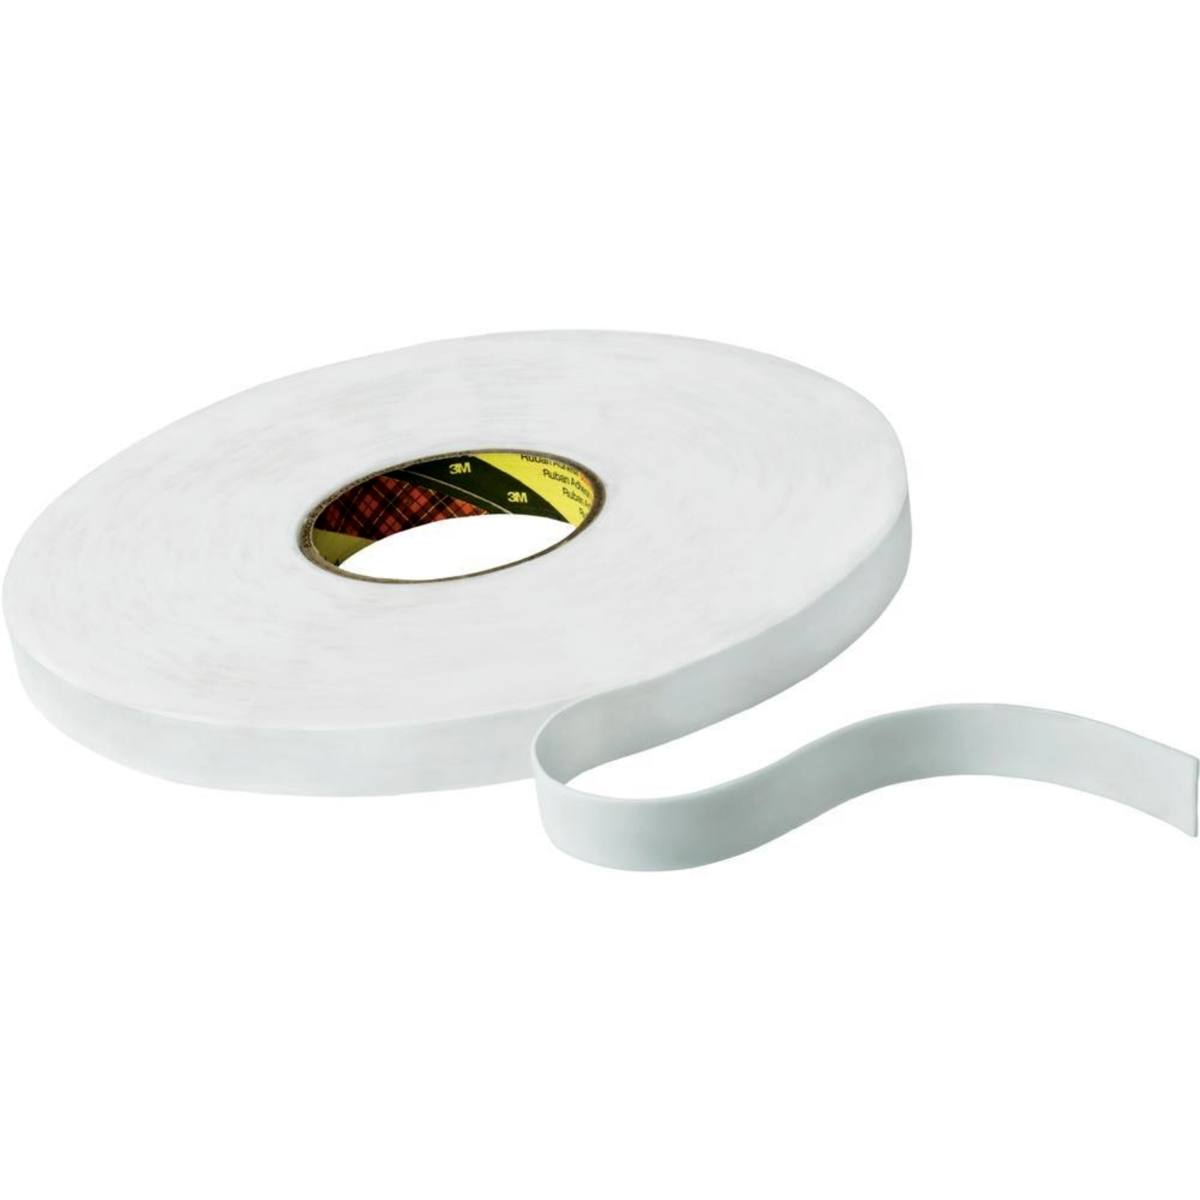 Nastro adesivo 3M in schiuma PE con adesivo in gomma-resina 9528, bianco, 9 mm x 66 m, 0,8 mm